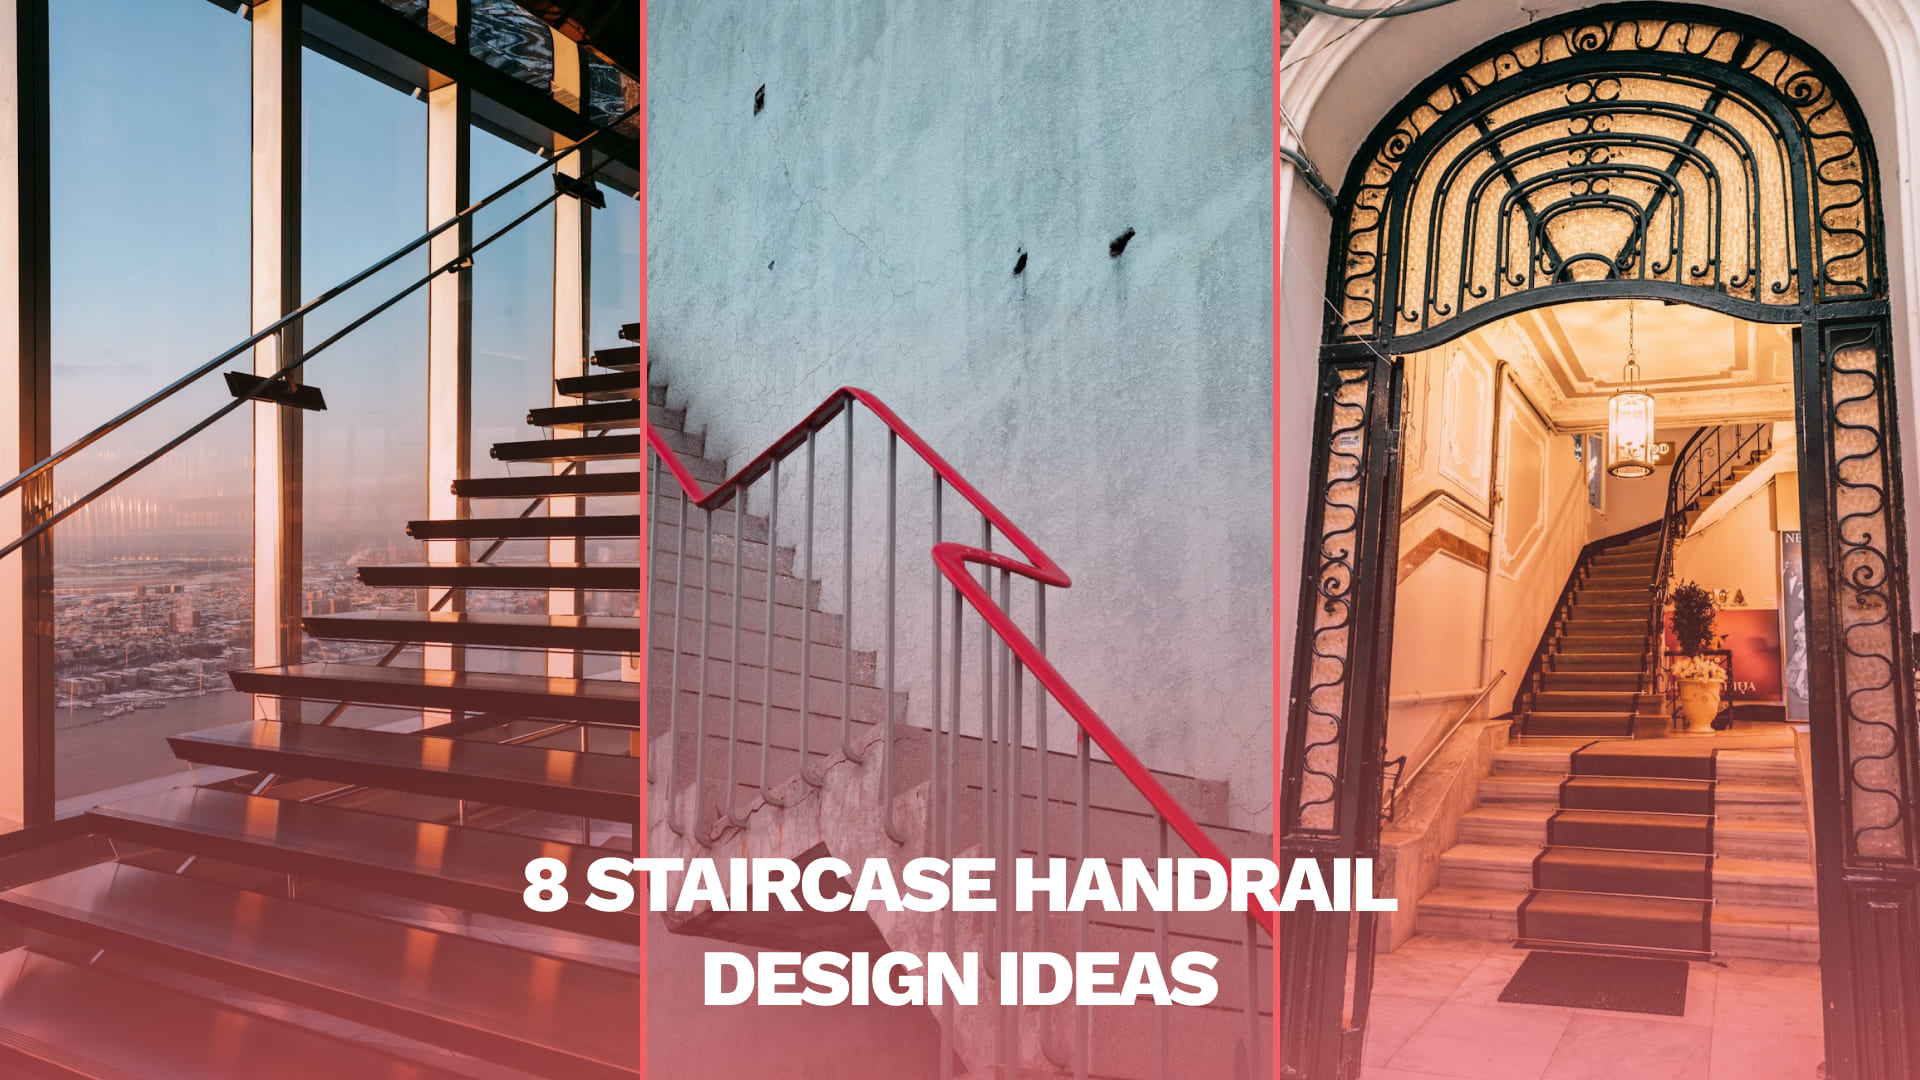 8 staircase handrail design ideas